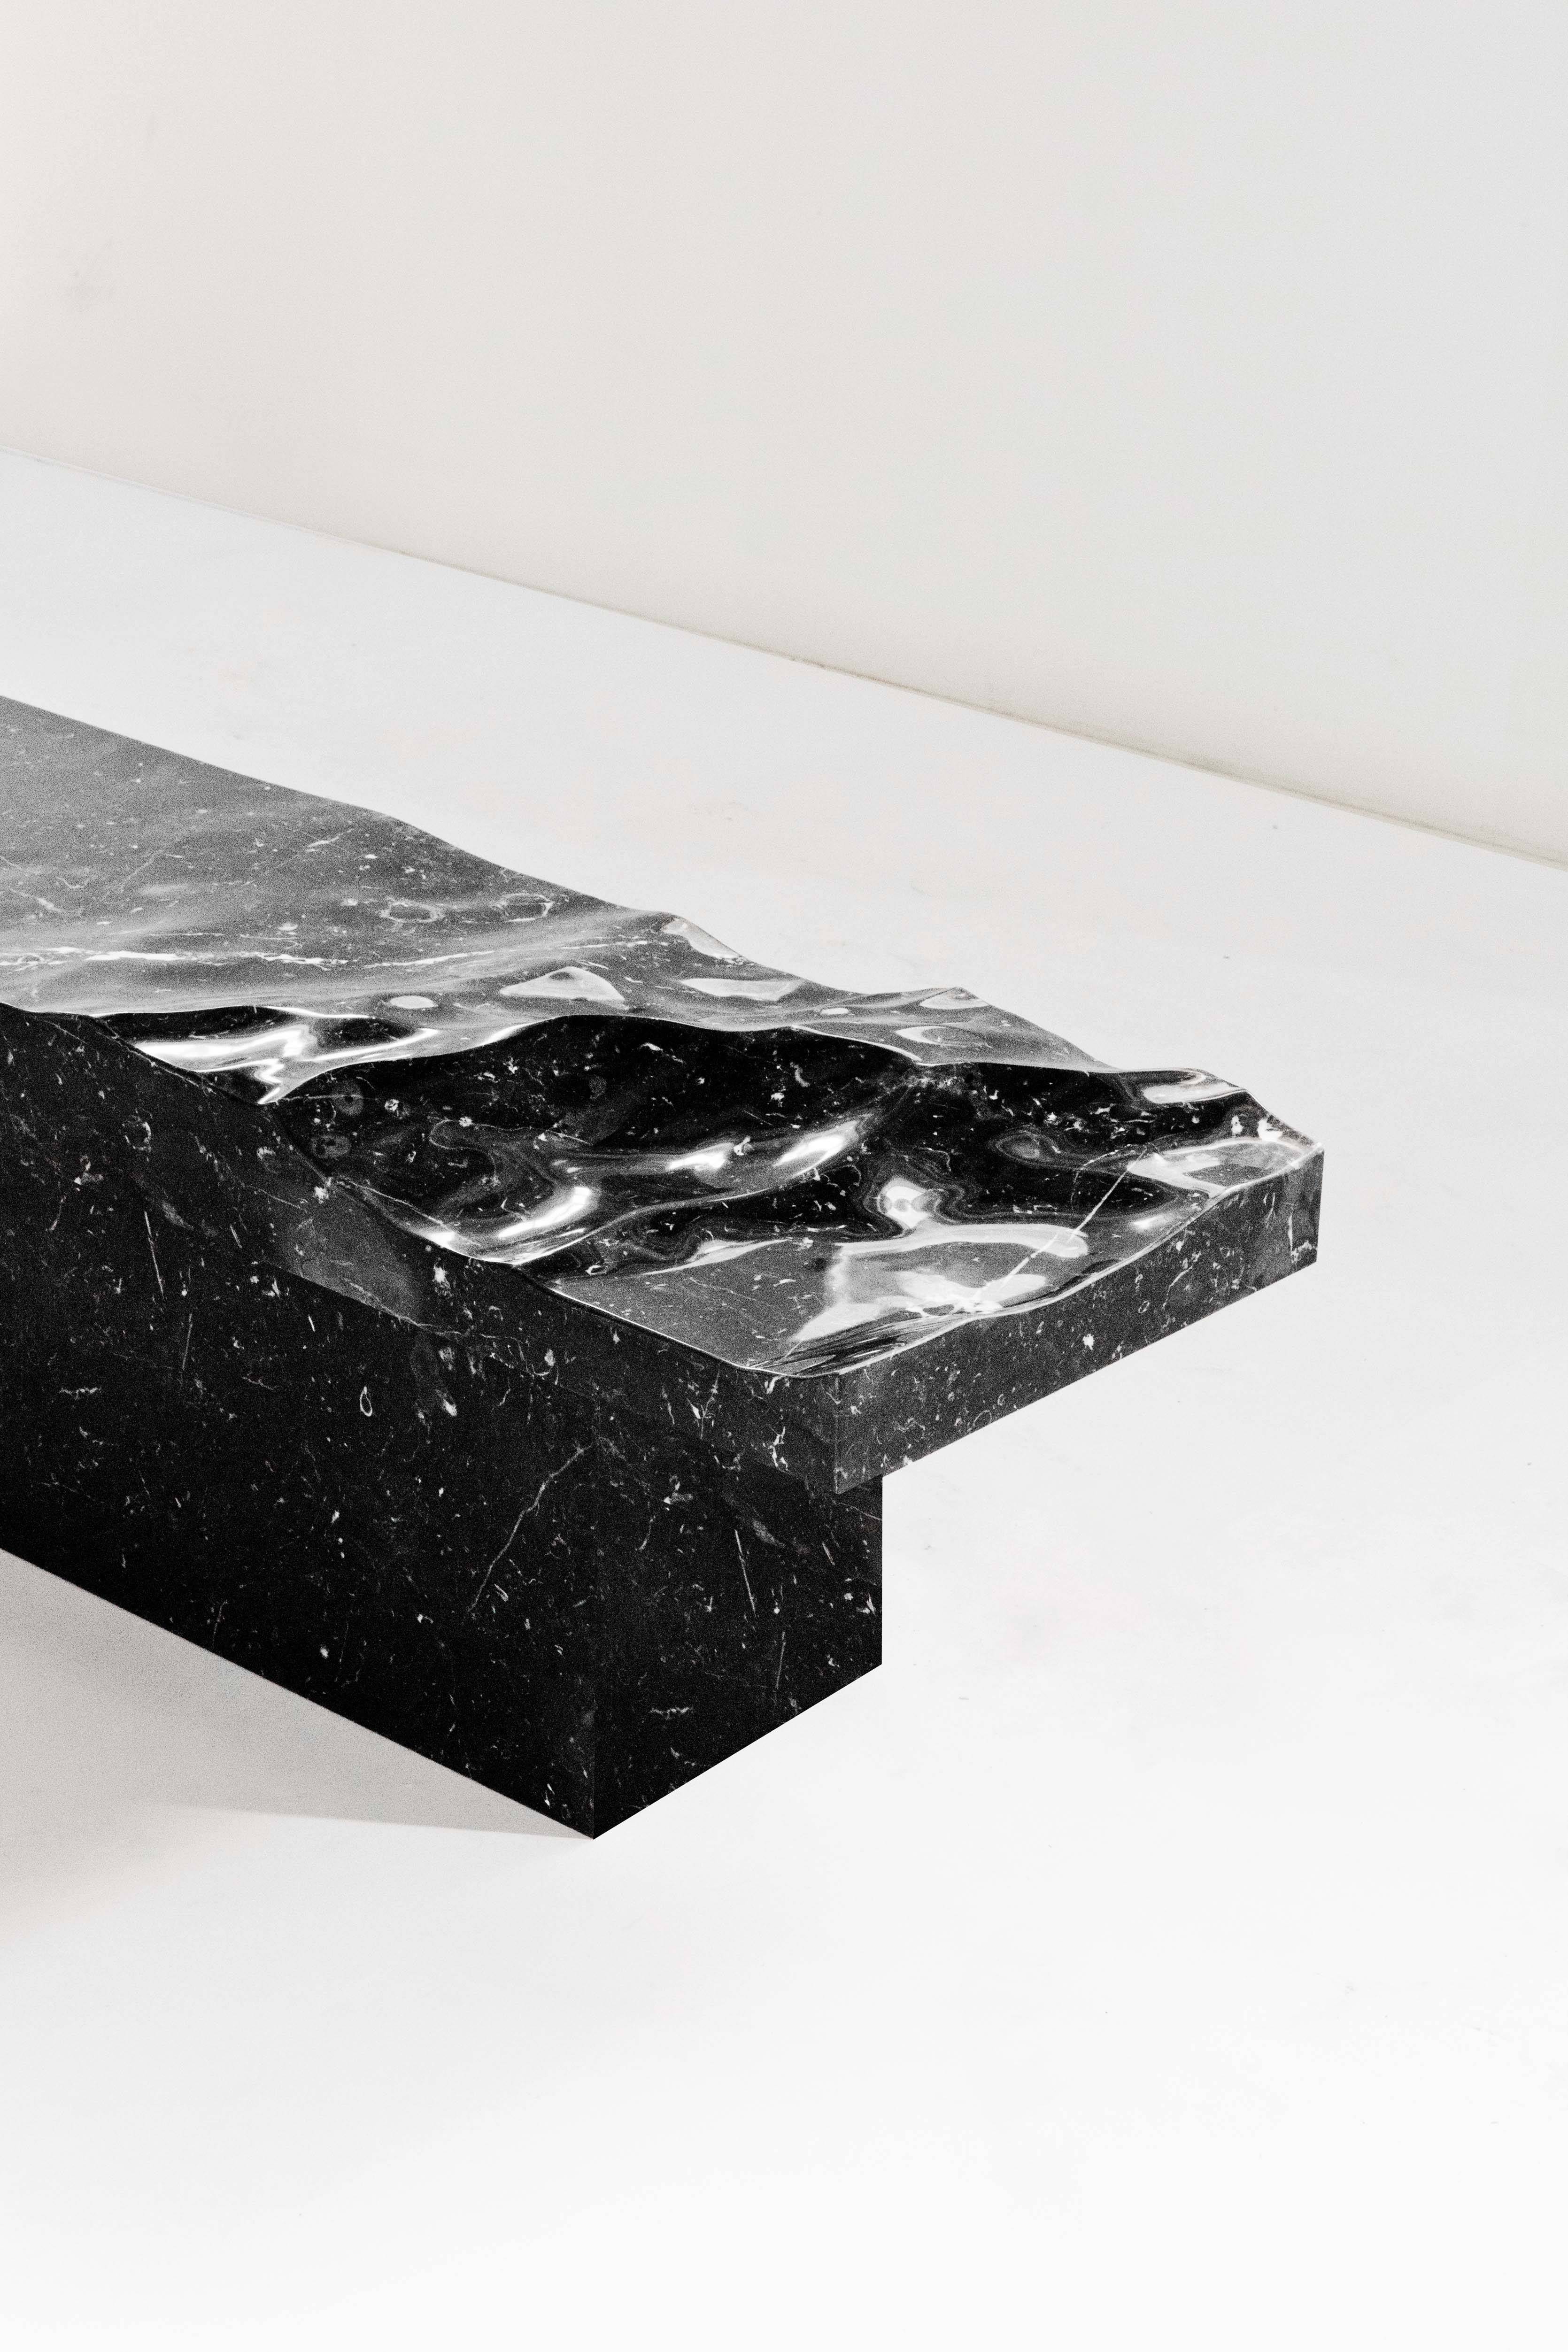 Portfolio: Mathieu Lehanneur’s marble oceans